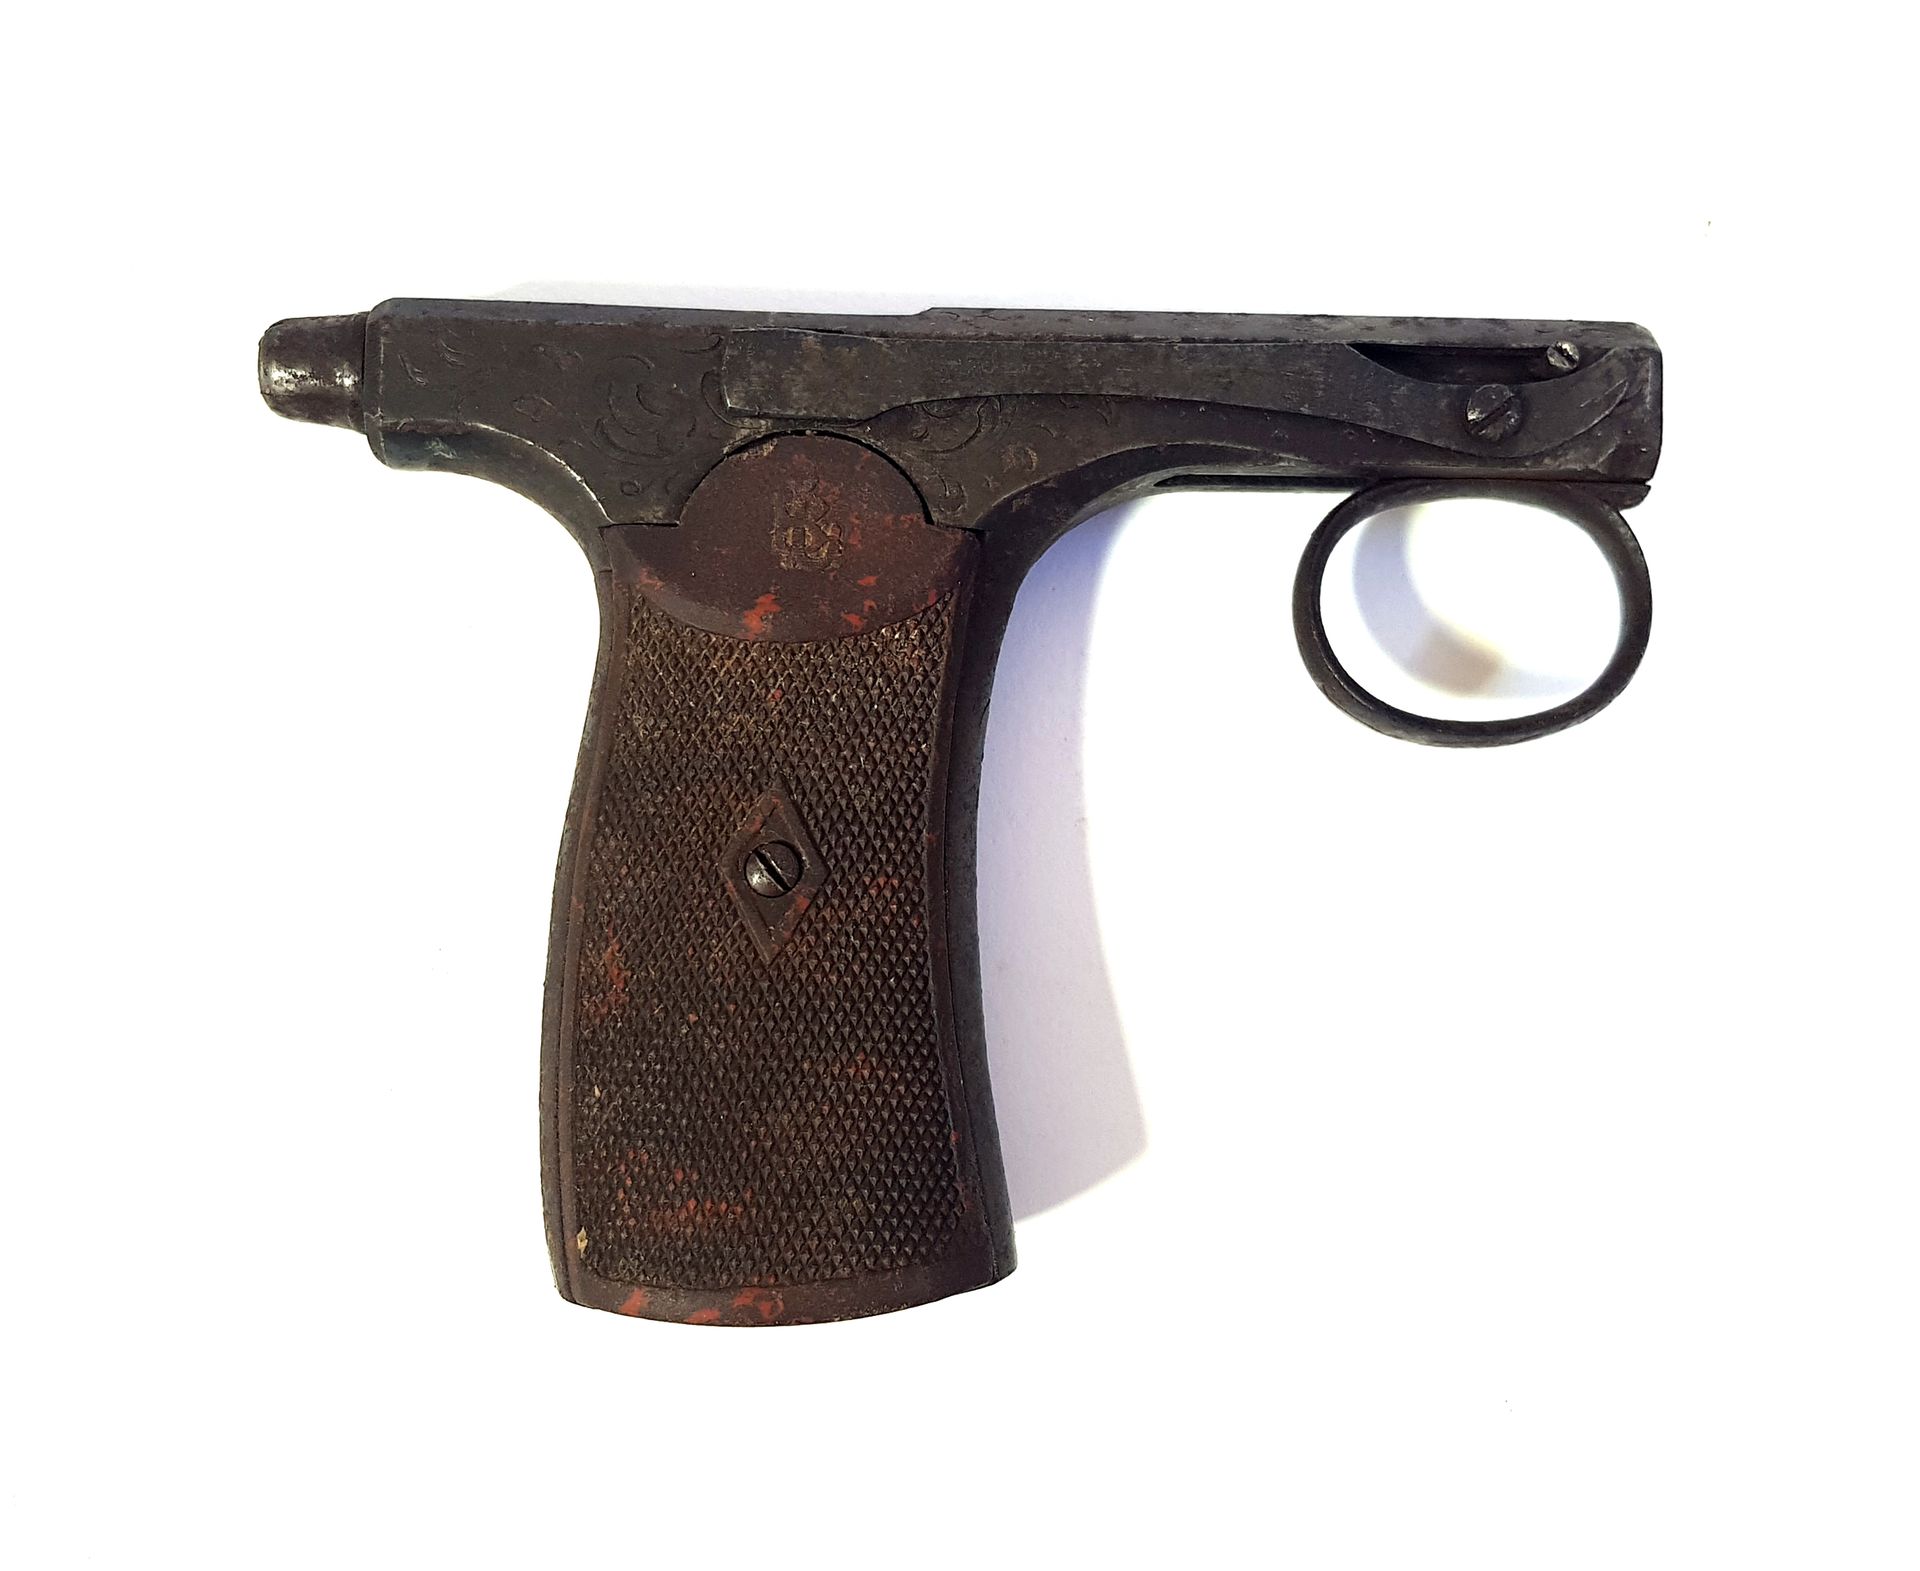 Null Pistola marrón tipo Latrige

L. 12,2 cm

Desgastado

Categoría D - venta li&hellip;